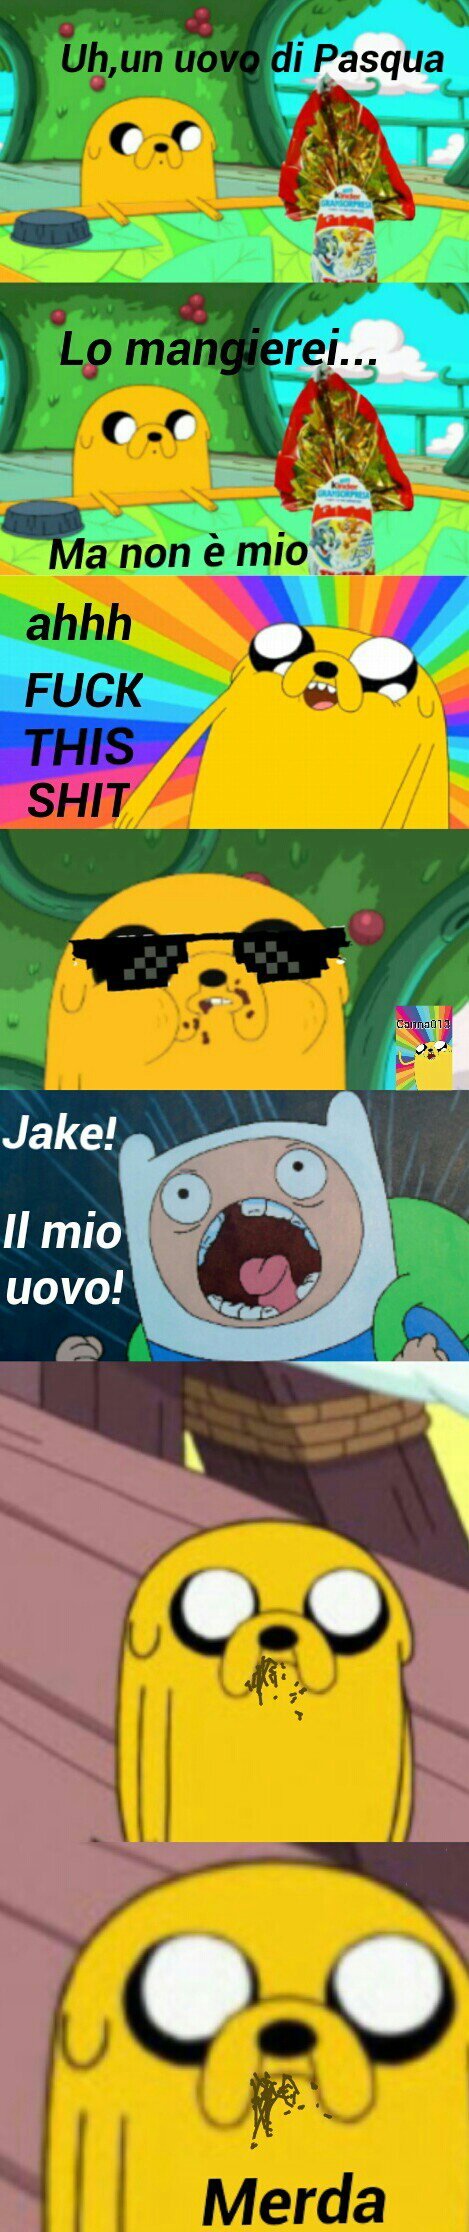 Volevo fare un meme sulla Pasqua ,e su adventure time,buona pasqua ,nosense tine ahaha ma Jake è epico ,spero vi piaccia